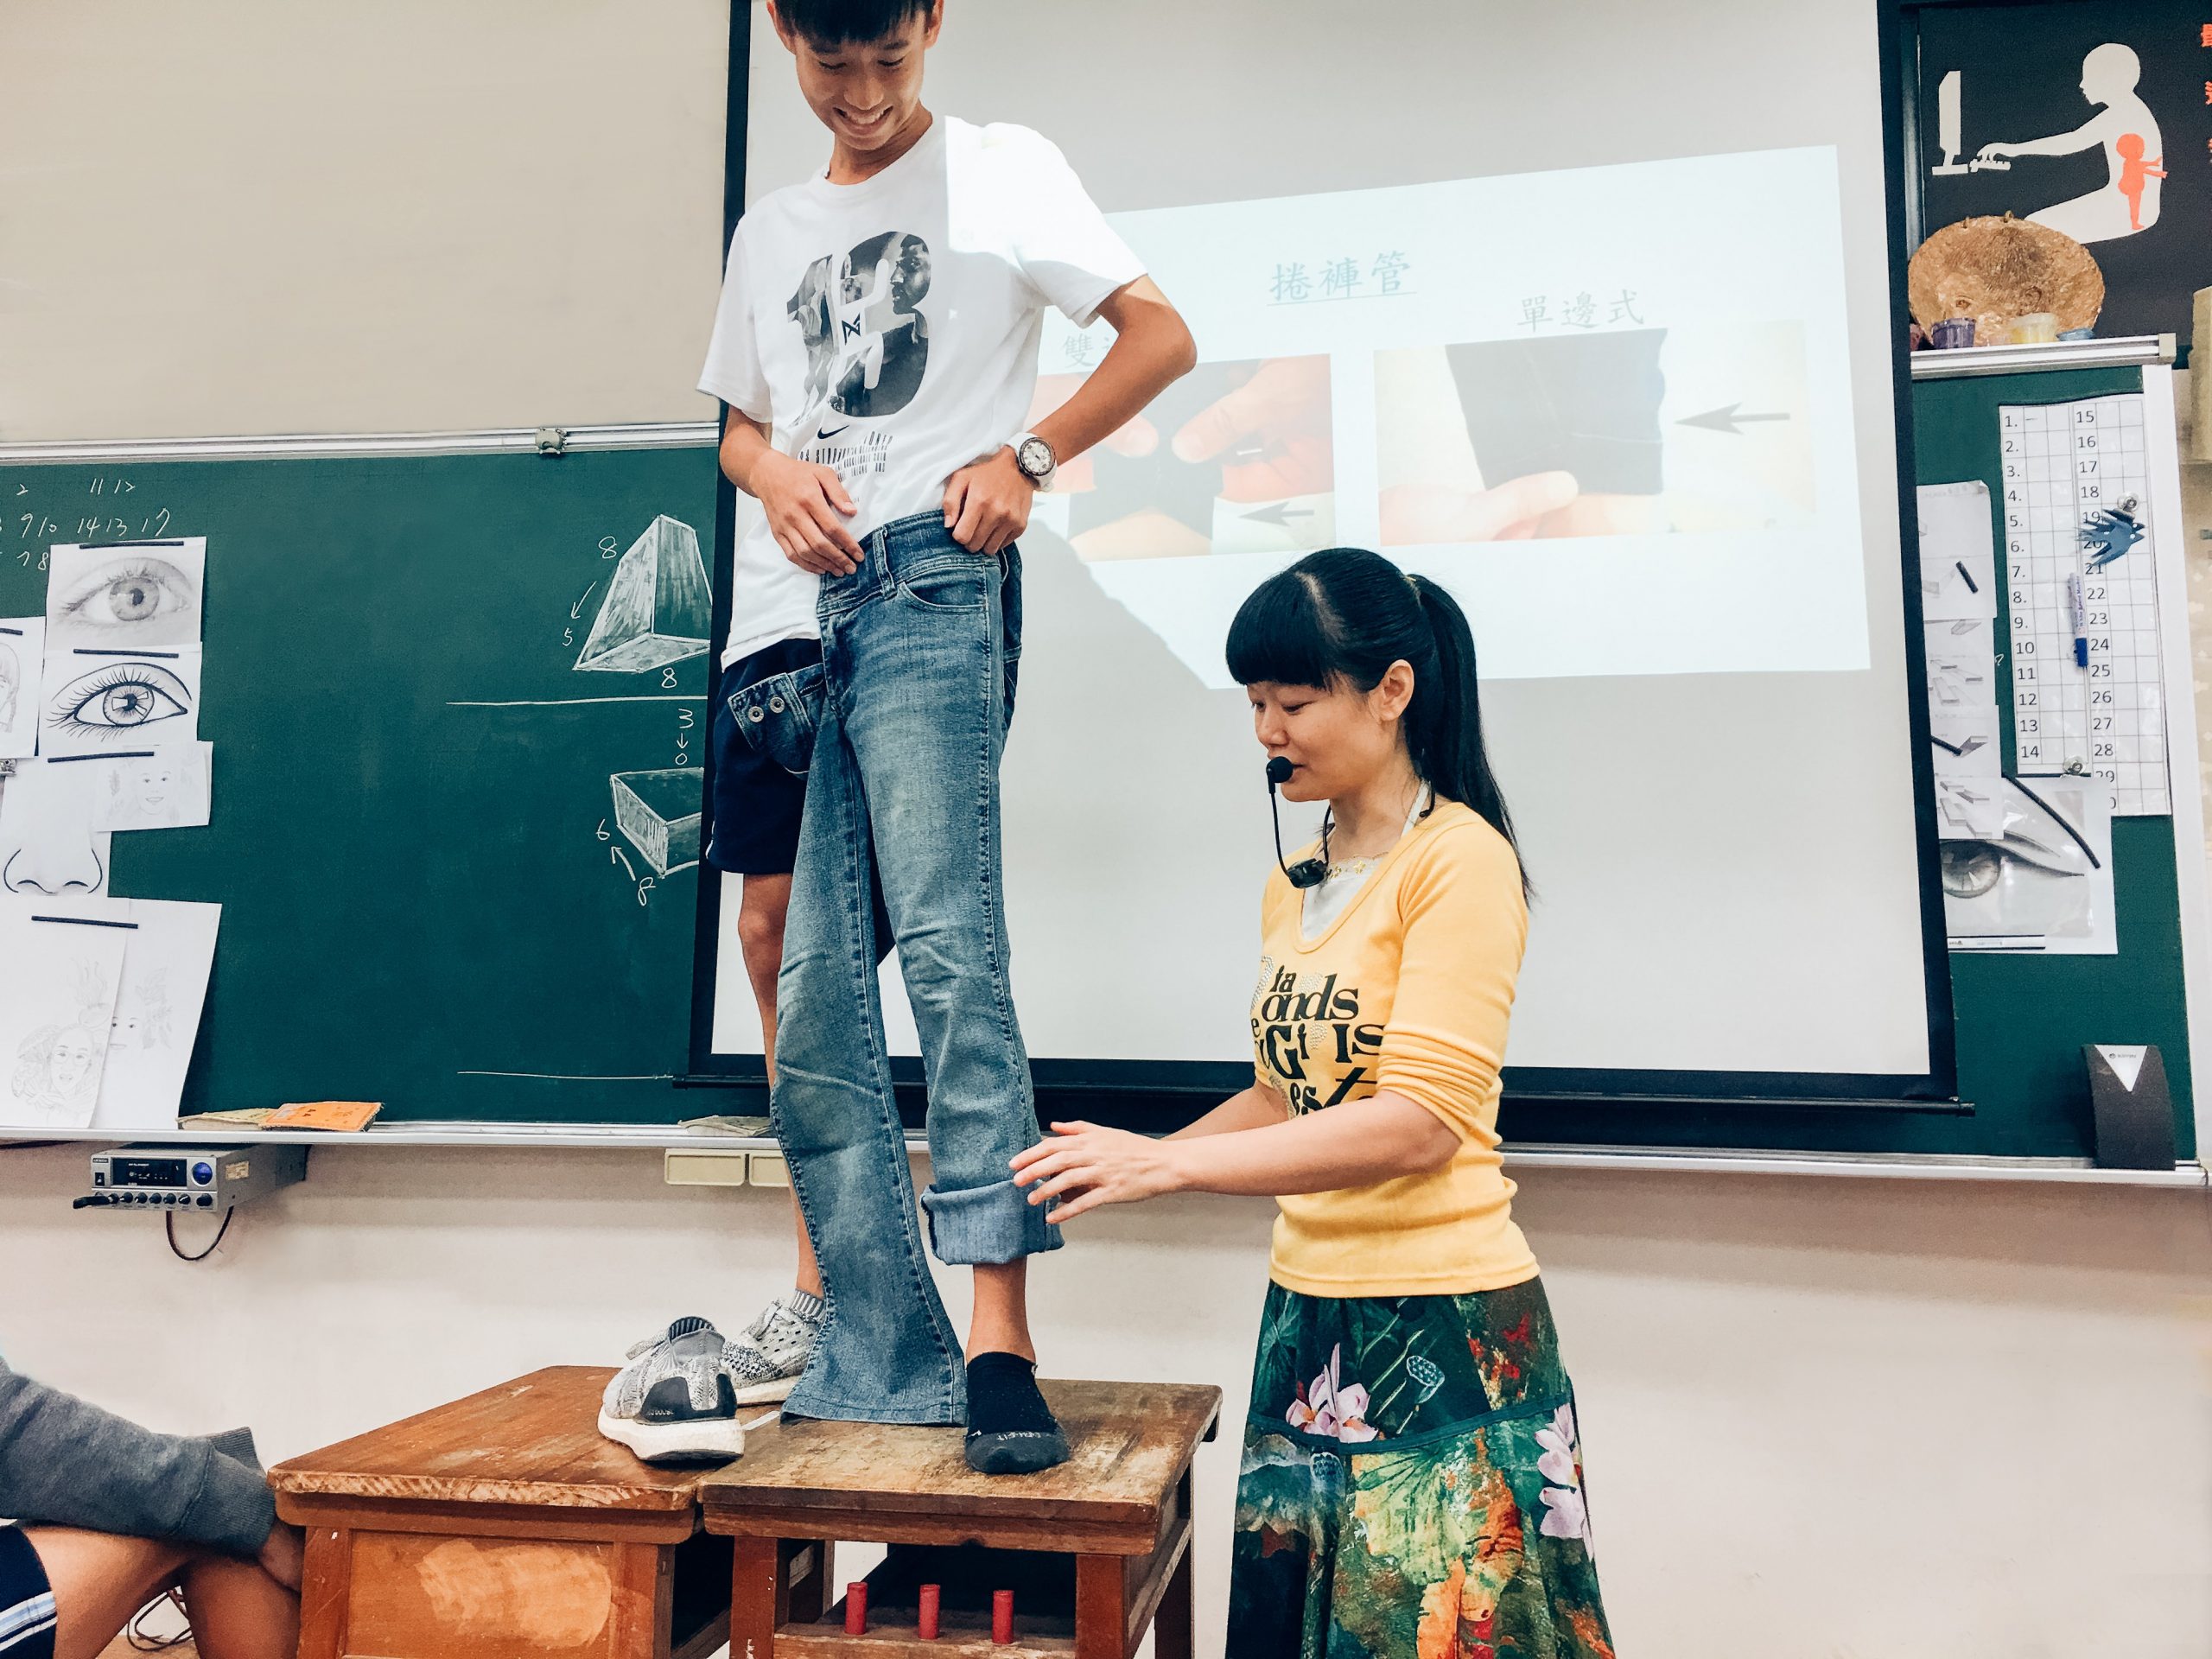 永仁高級中學陳潔婷老師在校園實作美感課程，同學站在桌上當模特給老師做示範